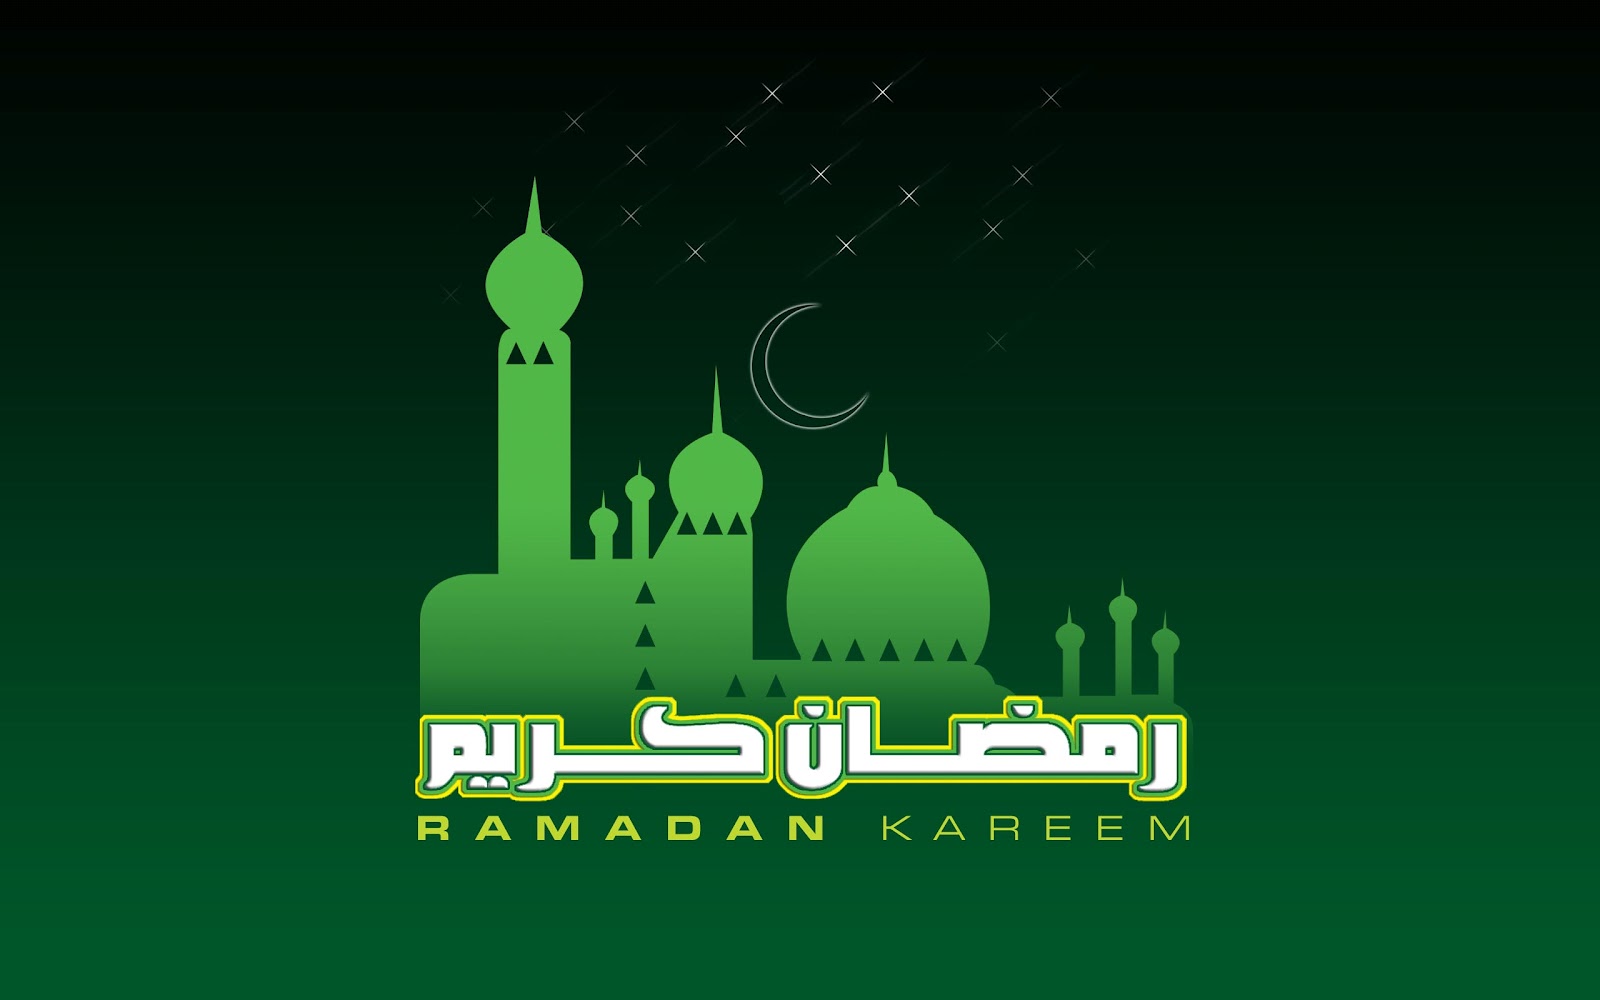 http://1.bp.blogspot.com/-gcBFdQg--BE/T_17jsmKhlI/AAAAAAAABF0/yaxNRHmHBpU/s1600/Ramadan-Kareem-Wallpaper.jpg